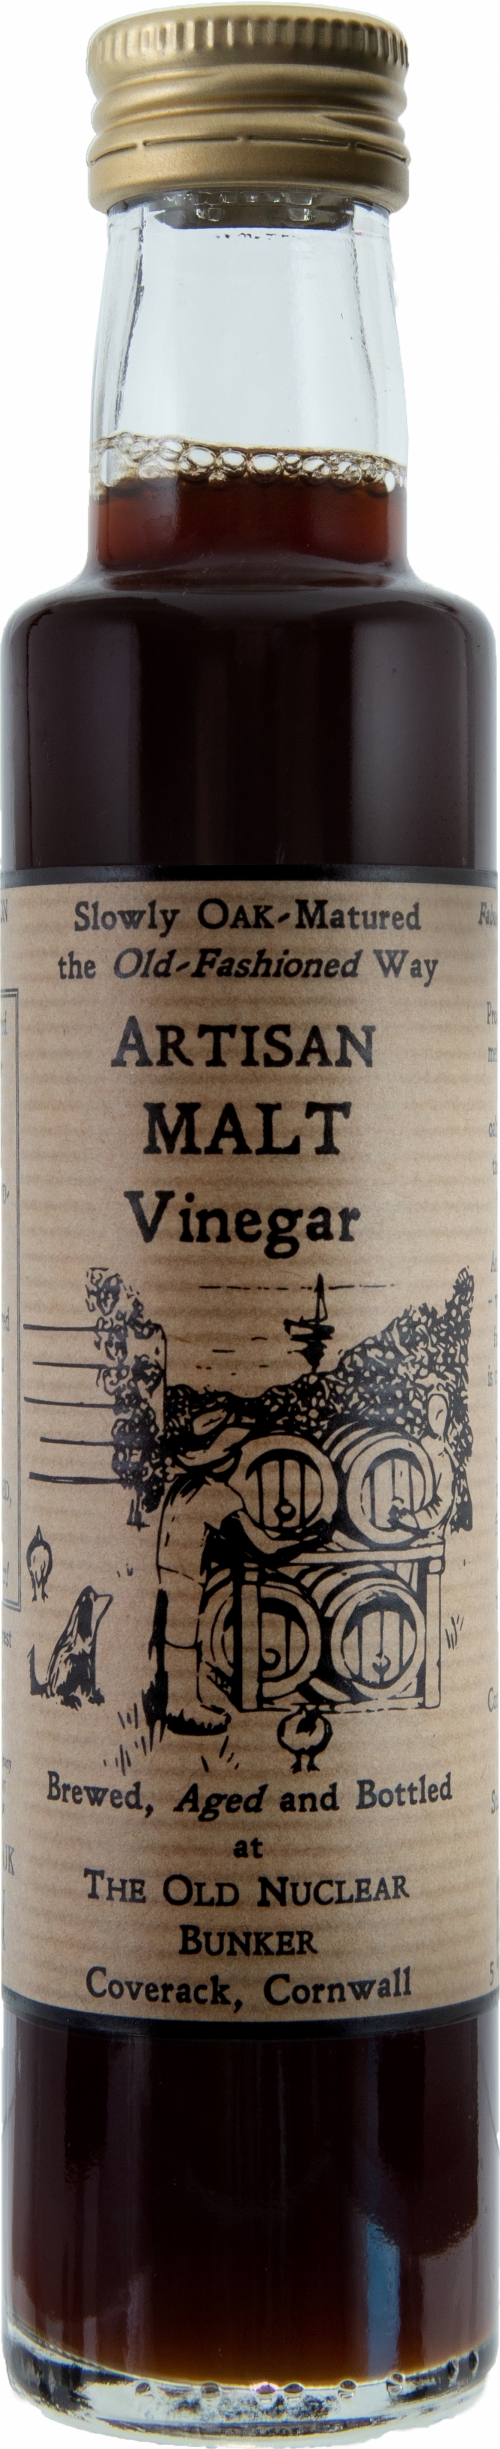 ARTISAN VINEGAR CO. Malt Vinegar 250ml